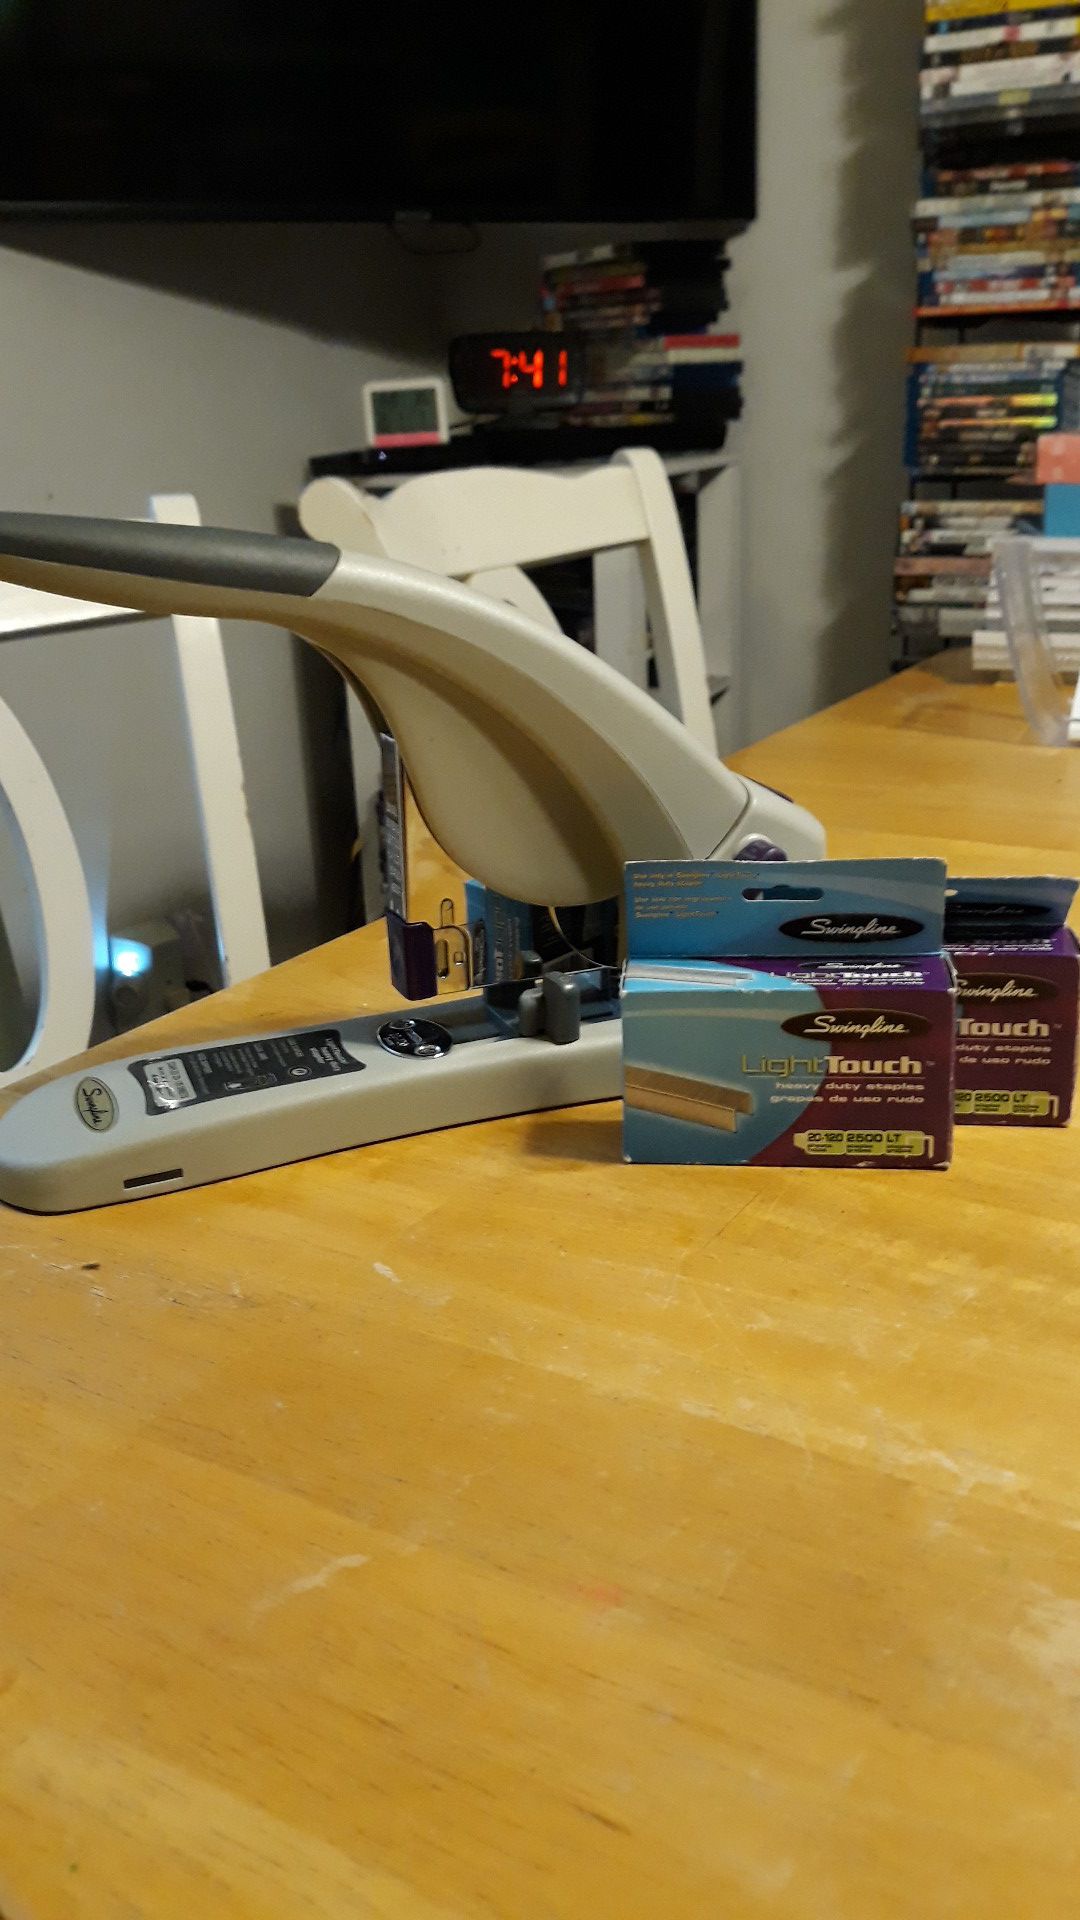 Swingline: LightTouch heavy duty stapler